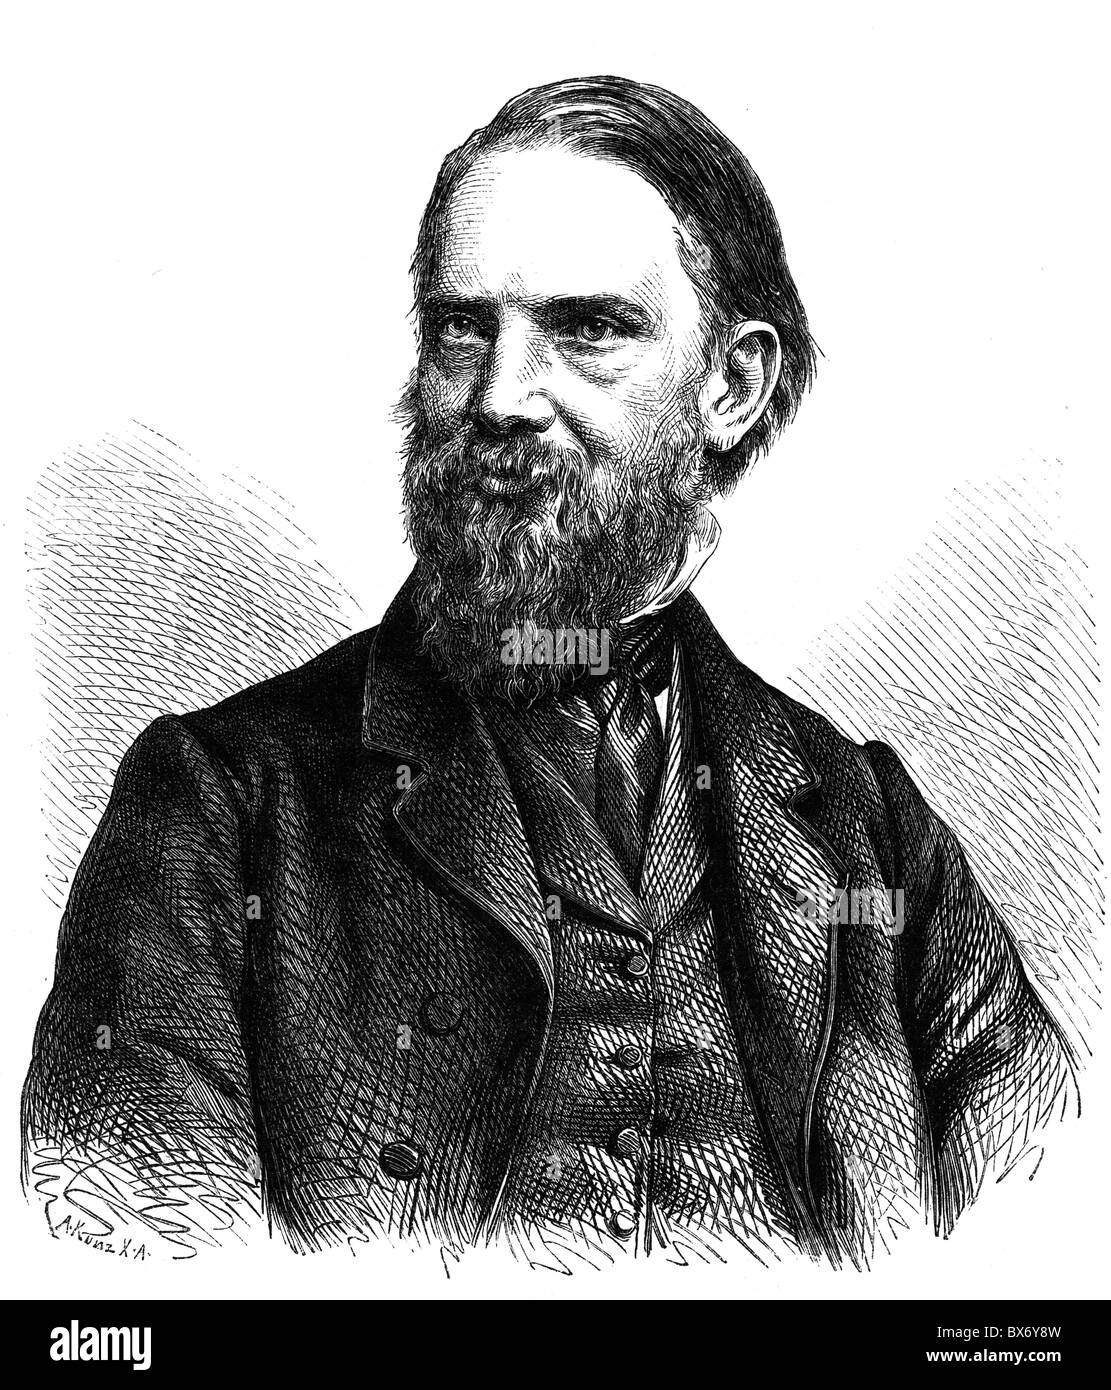 Schievelbein, Hermann, 18.11.1817 - 6.5.1867, artiste allemand (sculpteur), portrait, gravure de bois, XIXe siècle, Banque D'Images